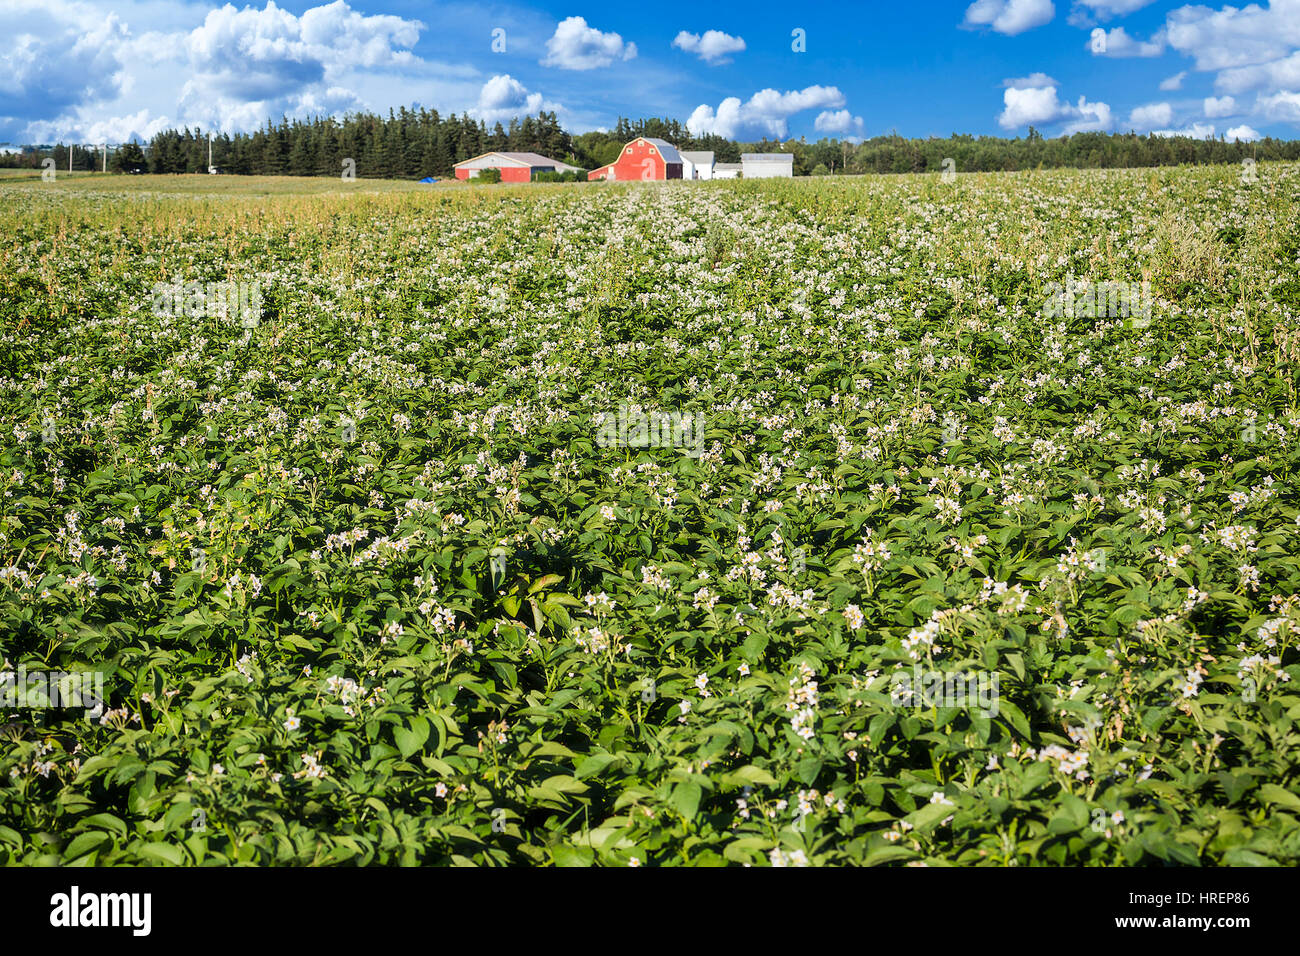 Domaine de la pomme de terre Les pommes de terre saines avec des entrepôts au loin, dans les régions rurales de l'Île du Prince-Édouard, Canada. Banque D'Images